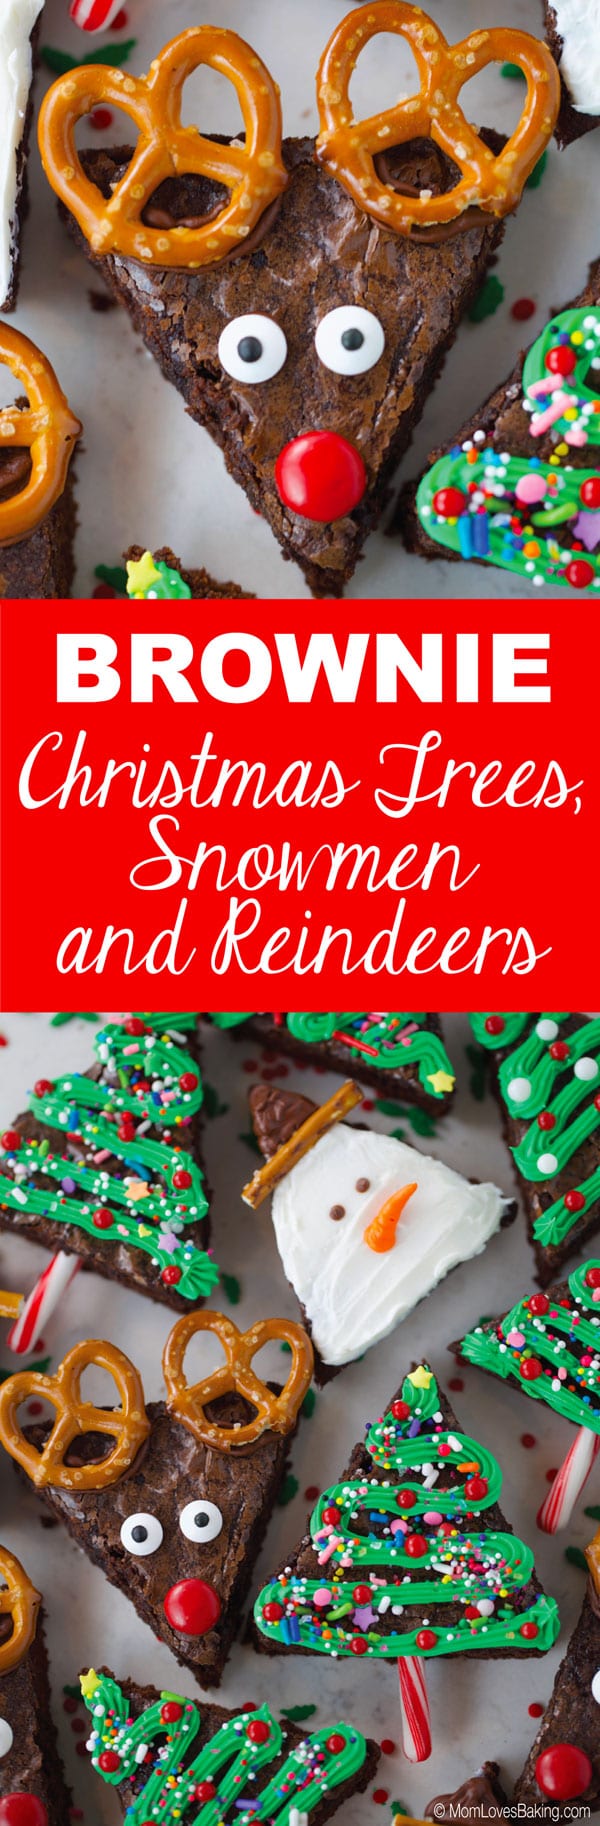 Brownie Christmas trees, reindeer and snowmen